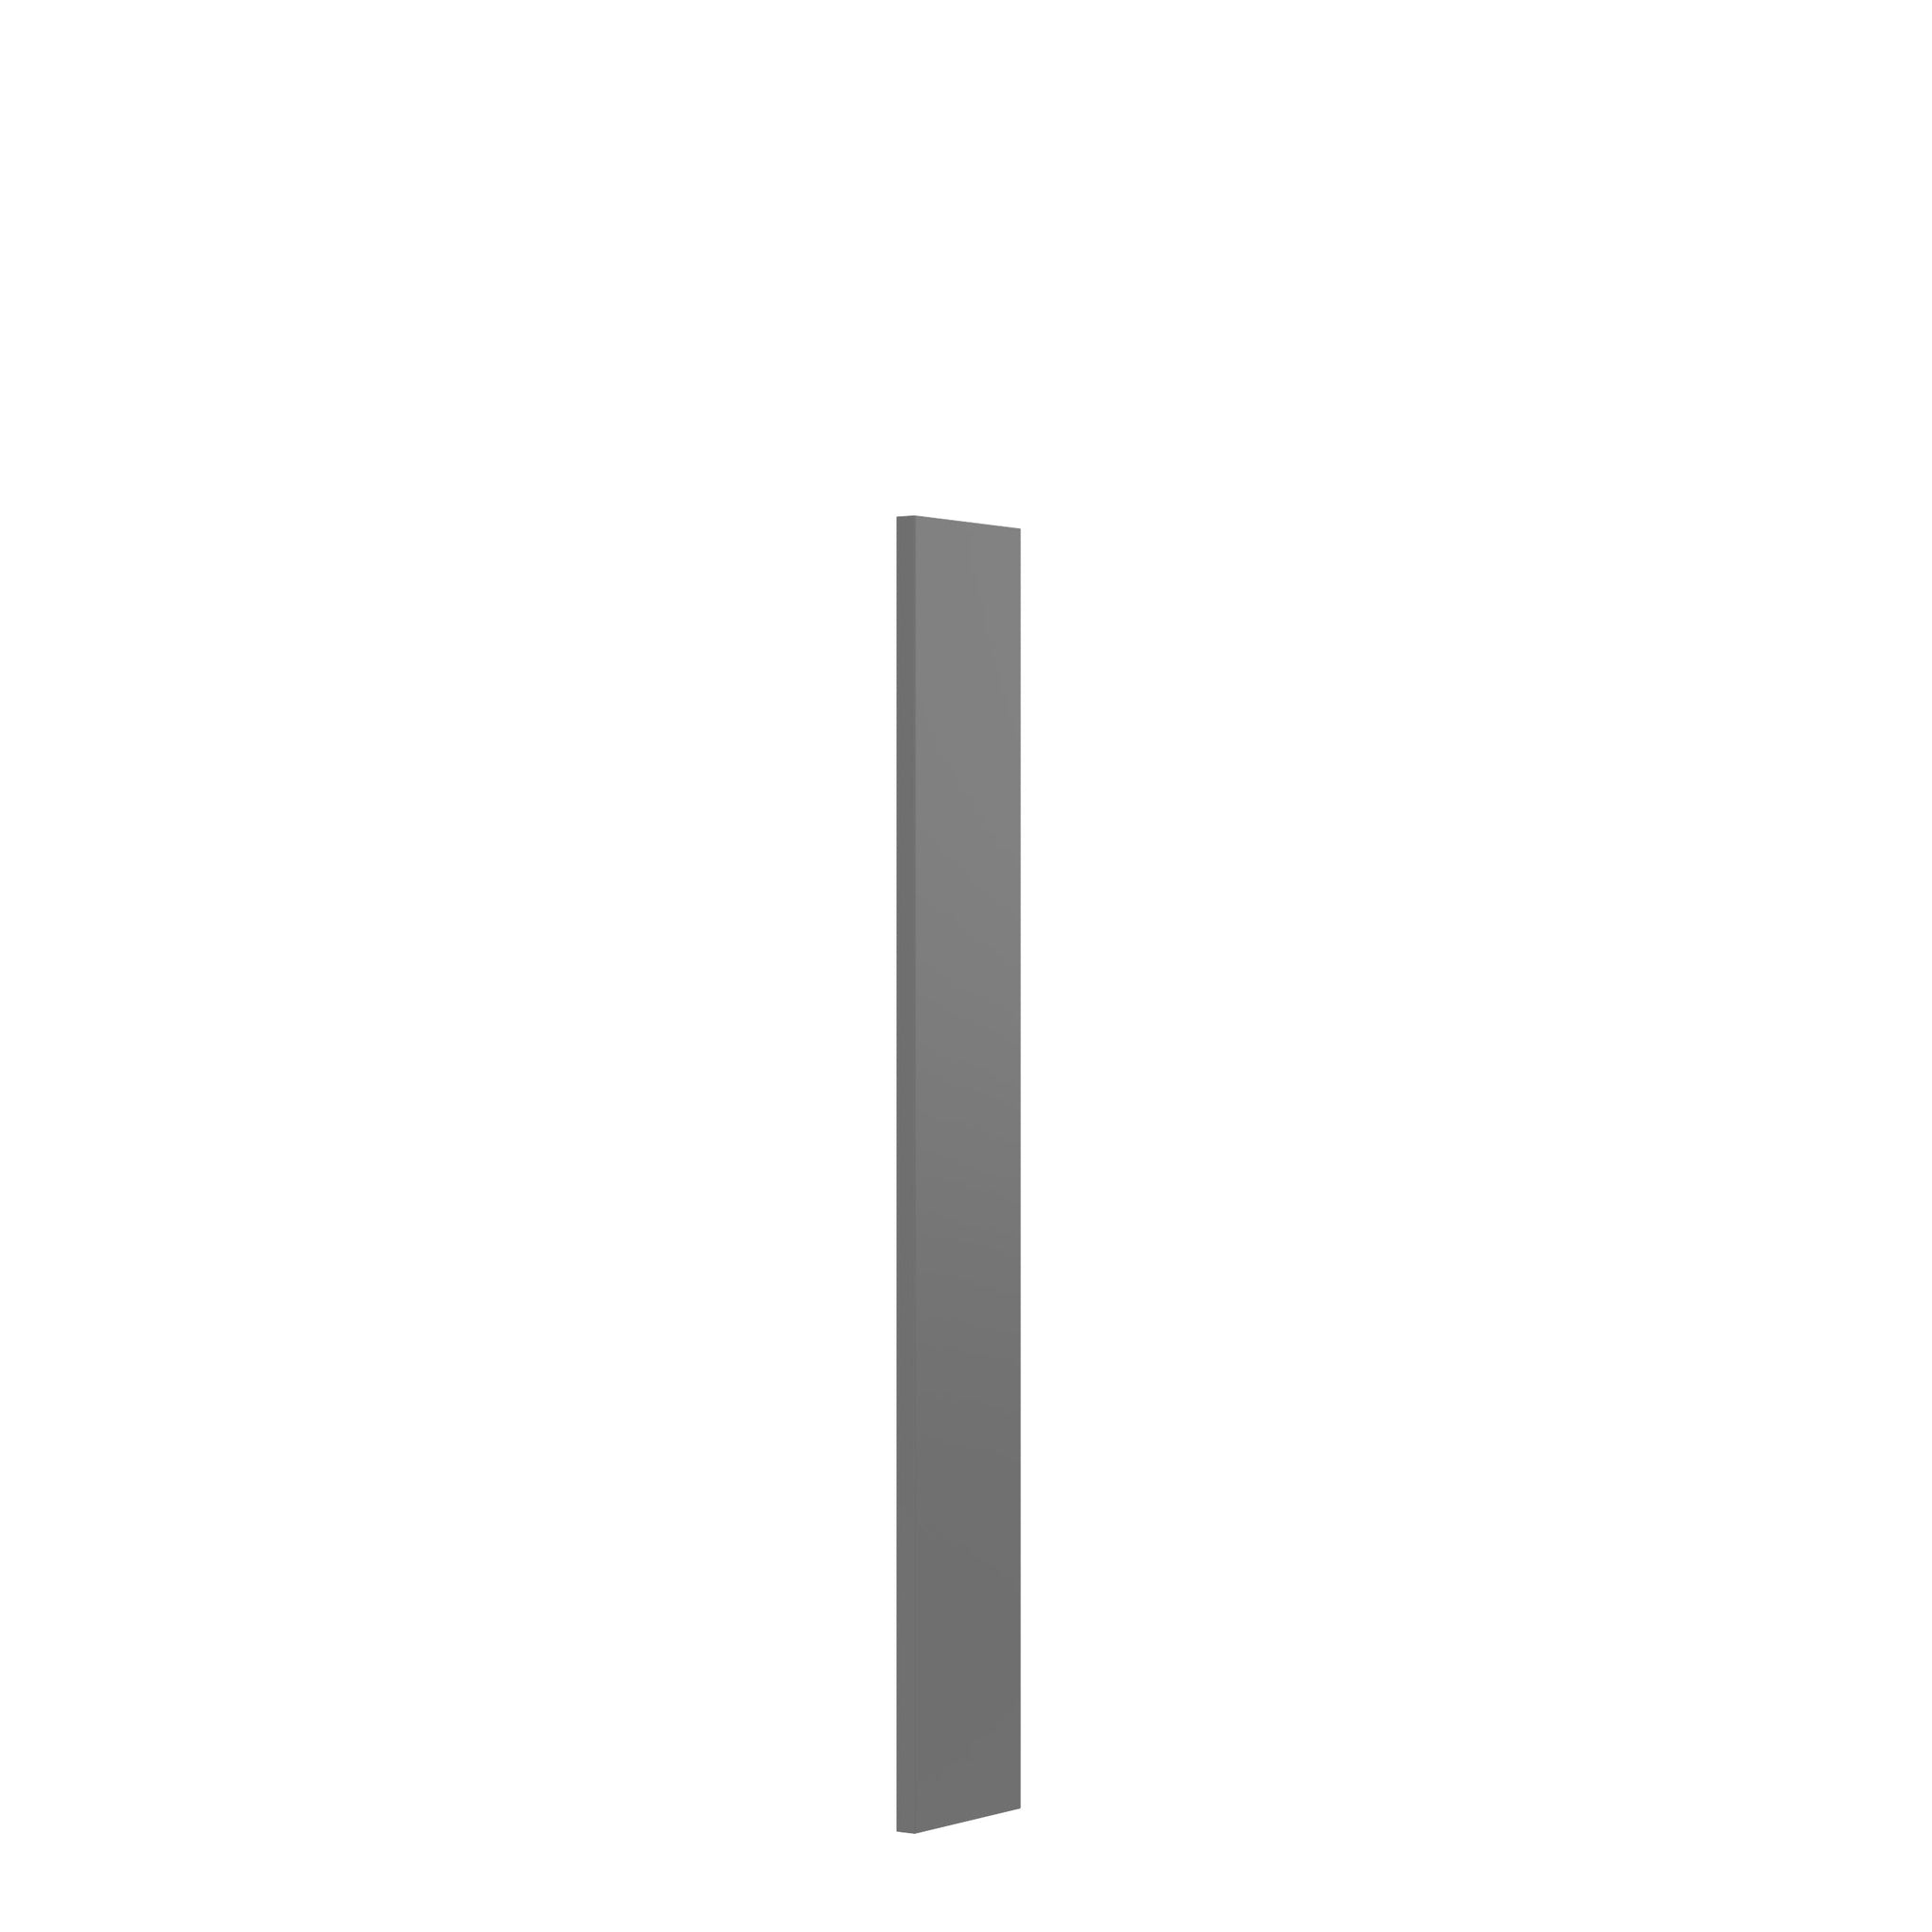 RTA - Elegant Dove - Wall Filler | 6"W x 42"H x 0.75"D